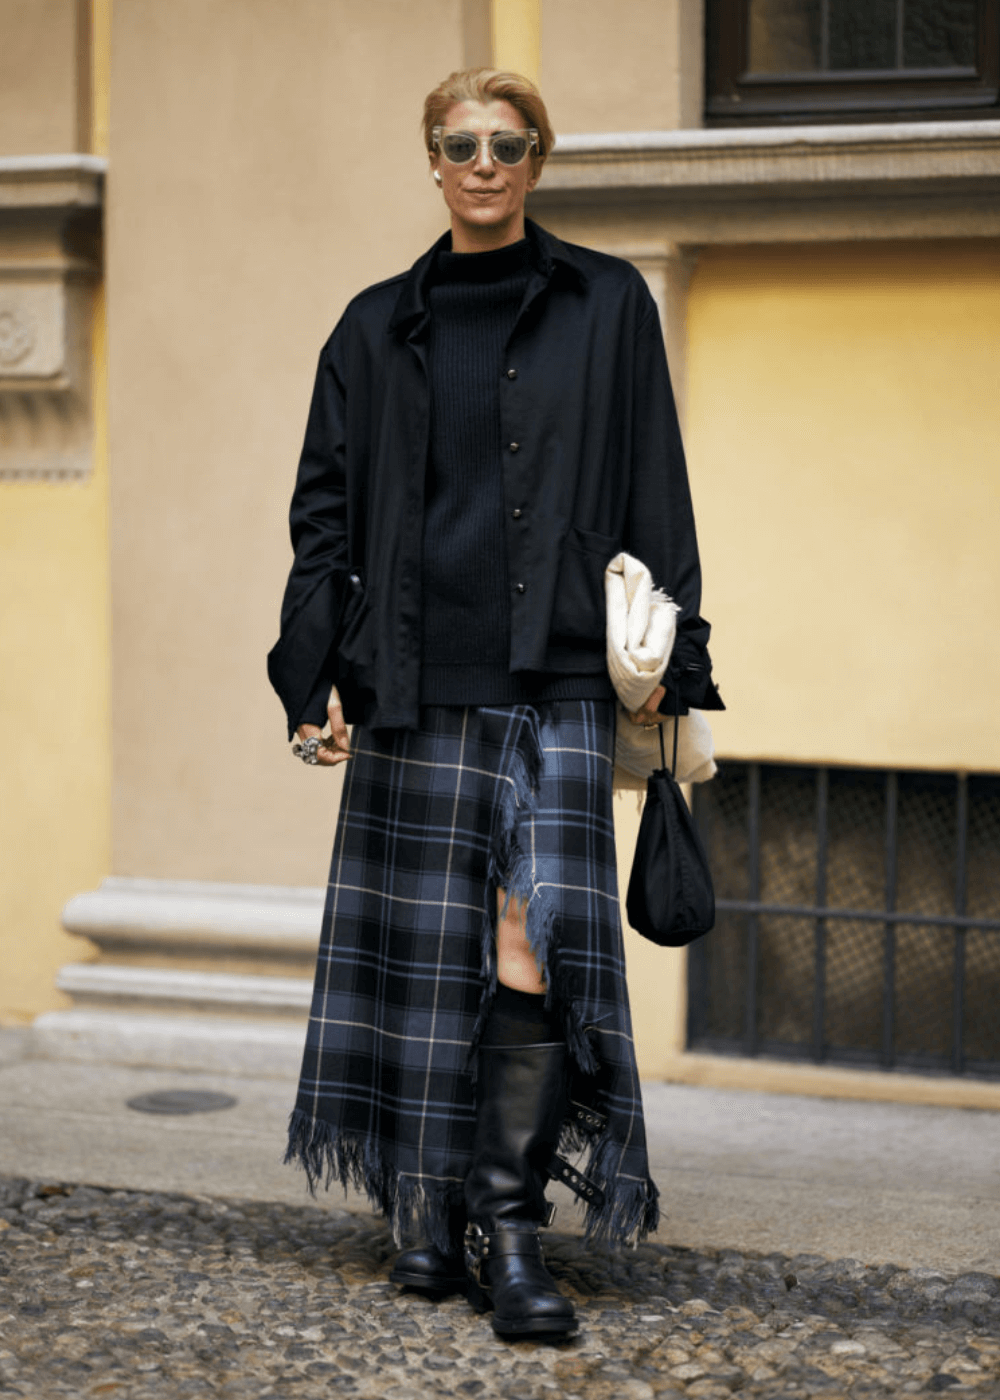 Street Style de Milão - saia longa xadrez, bota, tricot preto e óculos - street style de Milão - inverno - mulher em pé na rua usando óculos de sol - https://stealthelook.com.br